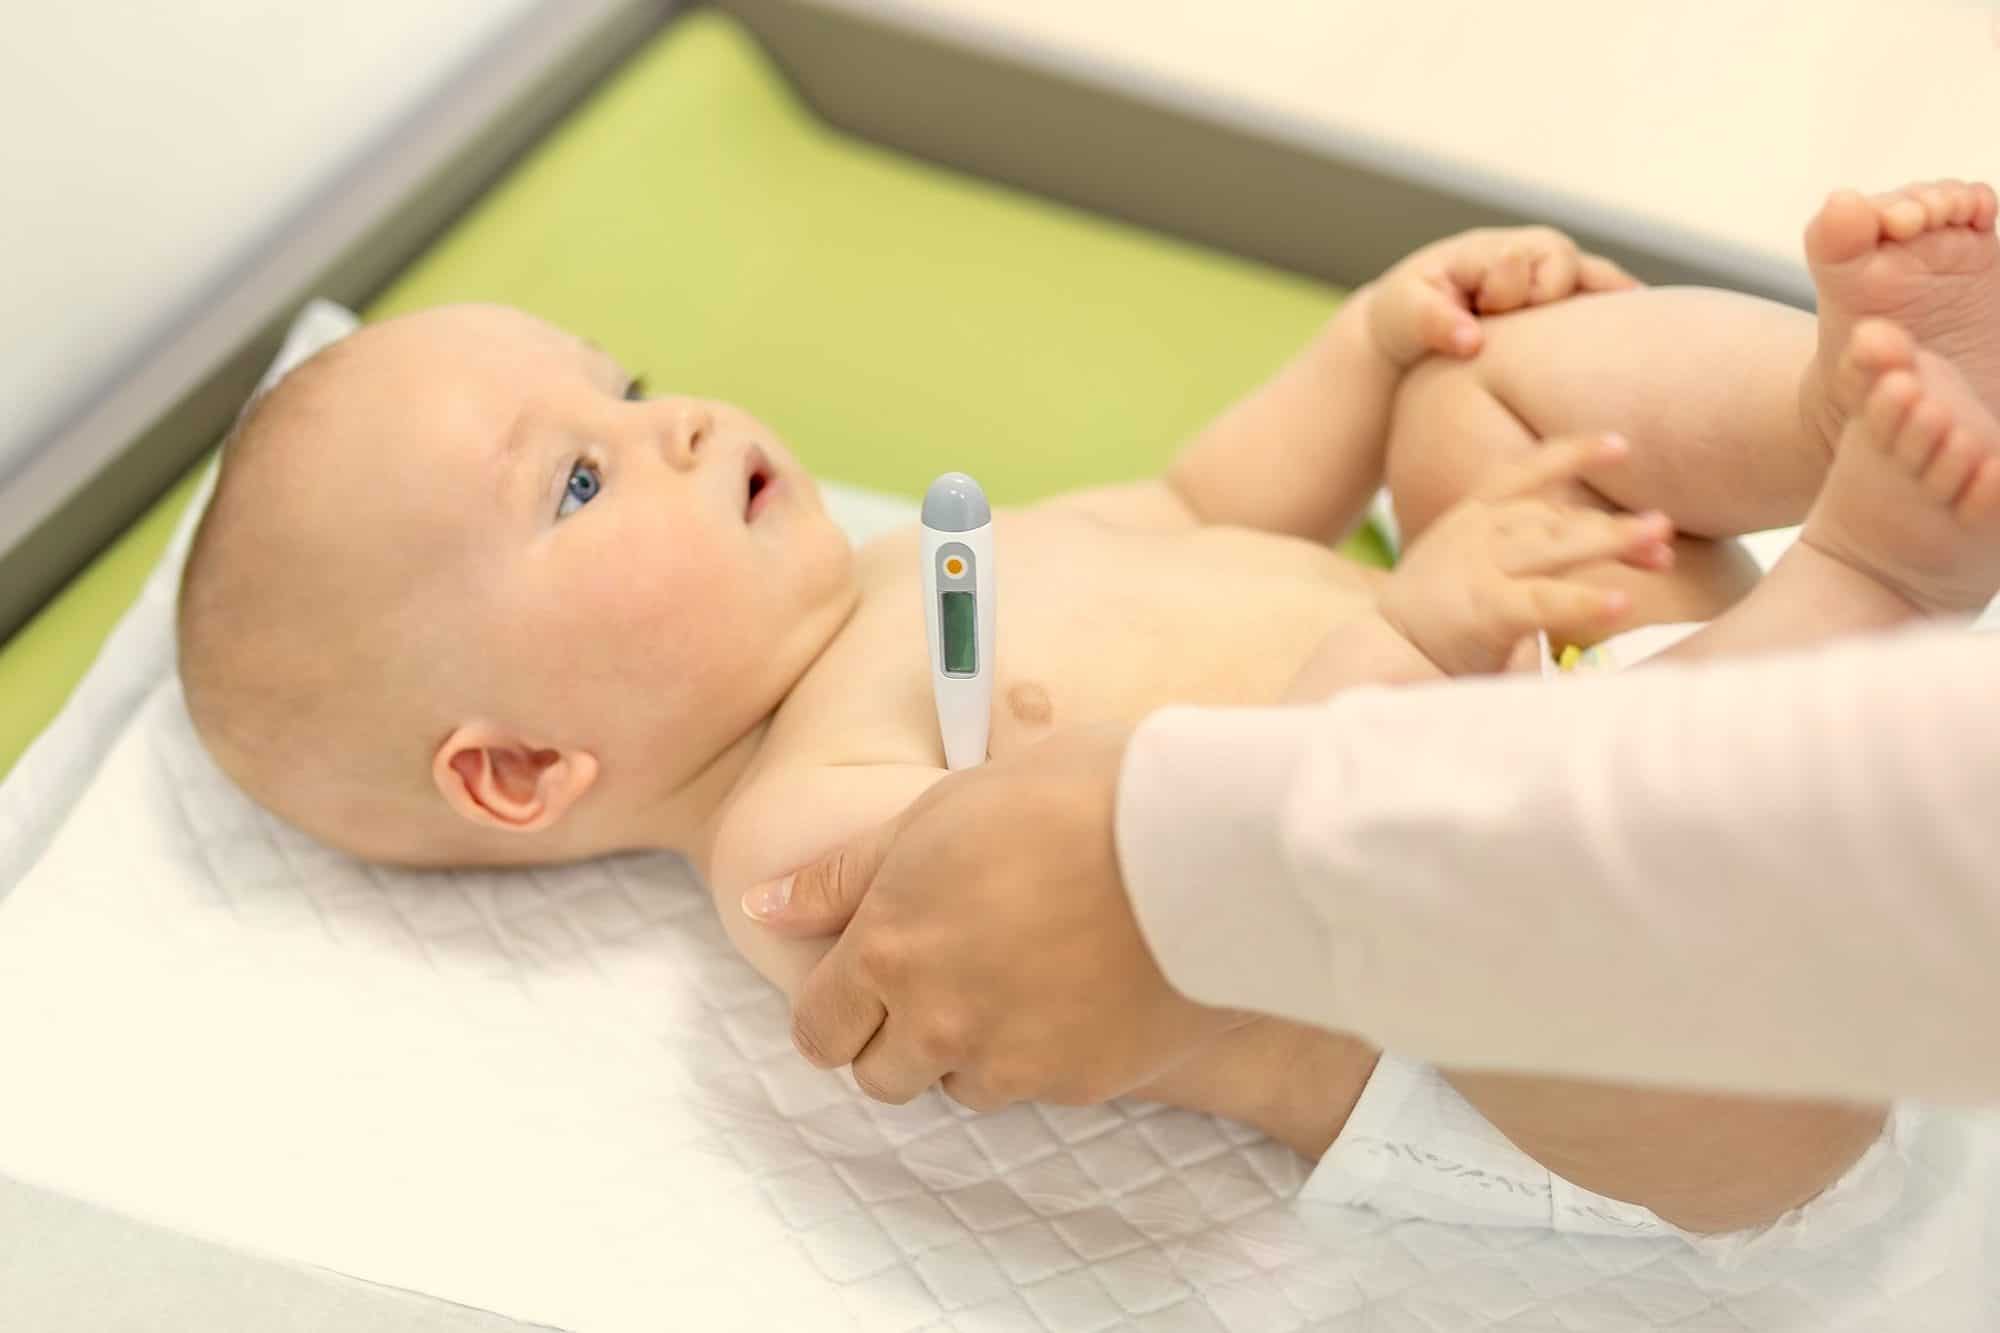 Bebé con fiebre: ¿cuándo ir a urgencias? - Criar con Sentido Común - A Partir De Cuanta Fiebre Hay Que Ir Al Hospital